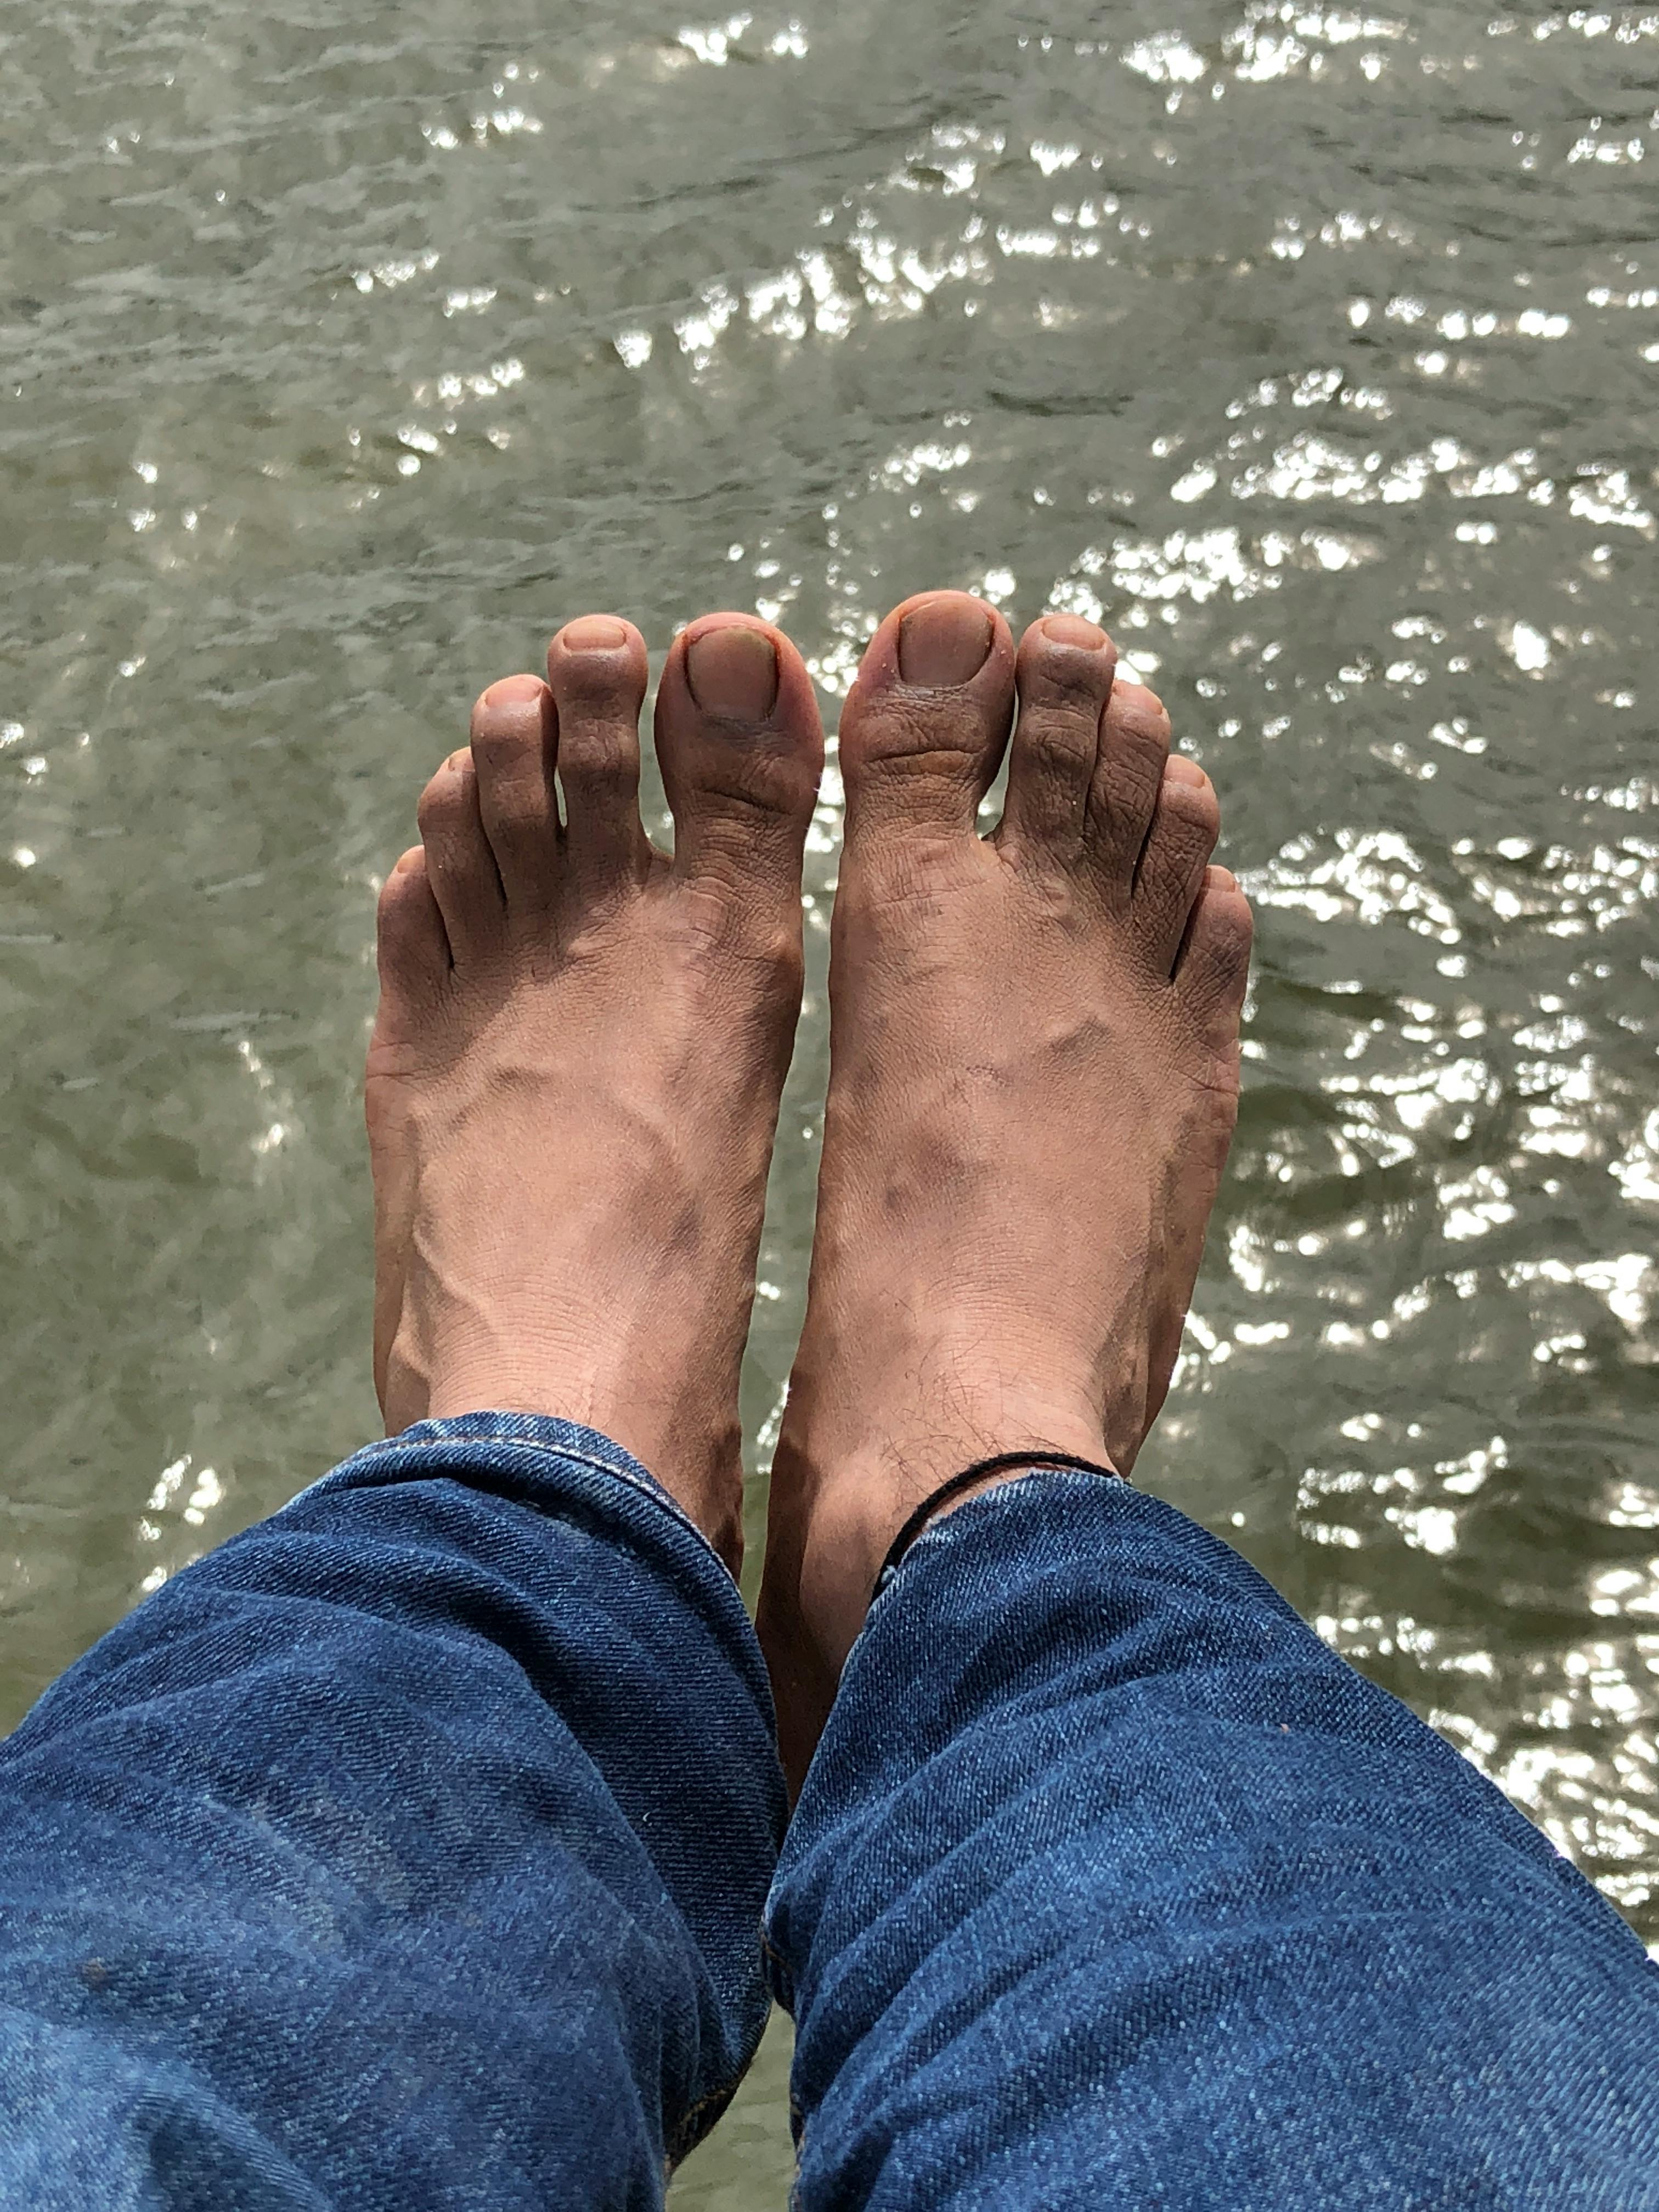 Free stock photo of feet, hanging, lake